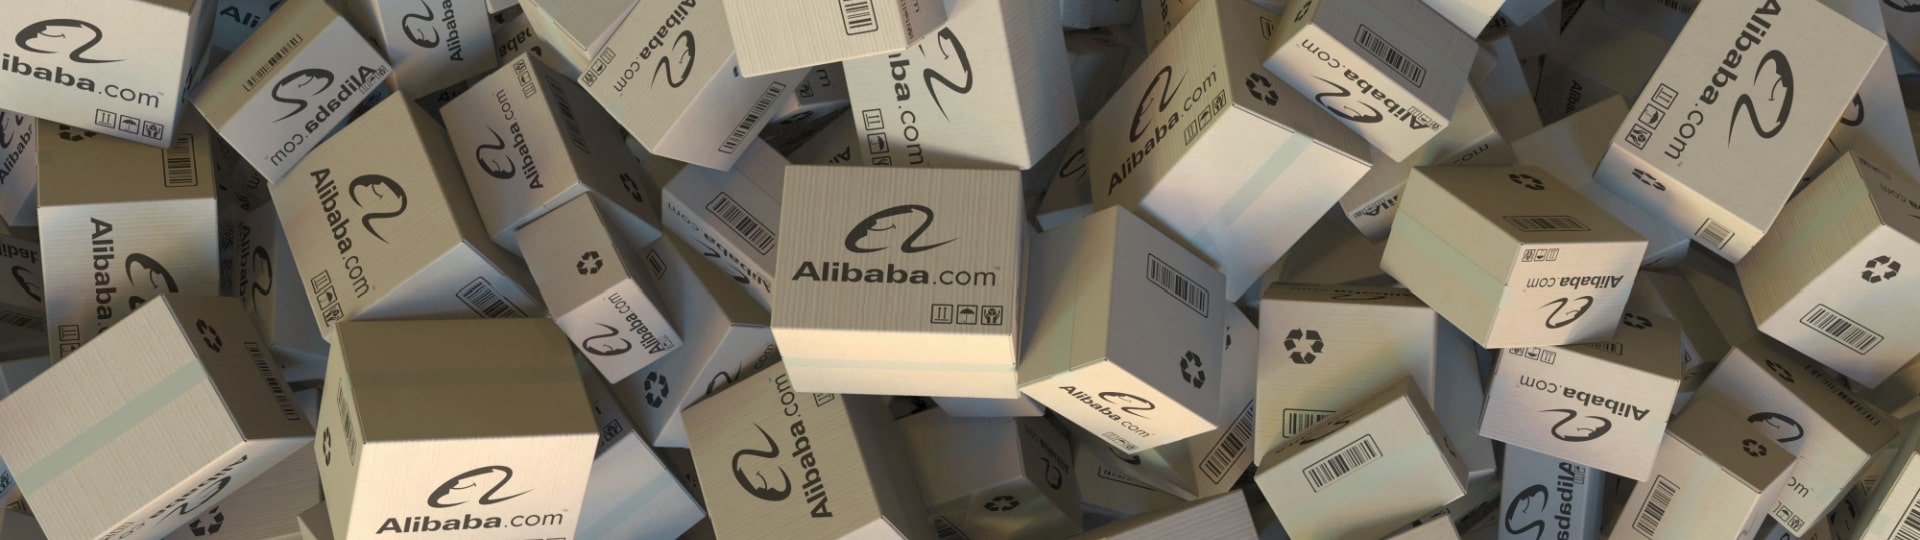 Internetový prodejce Alibaba výrazně zvýšil zisk